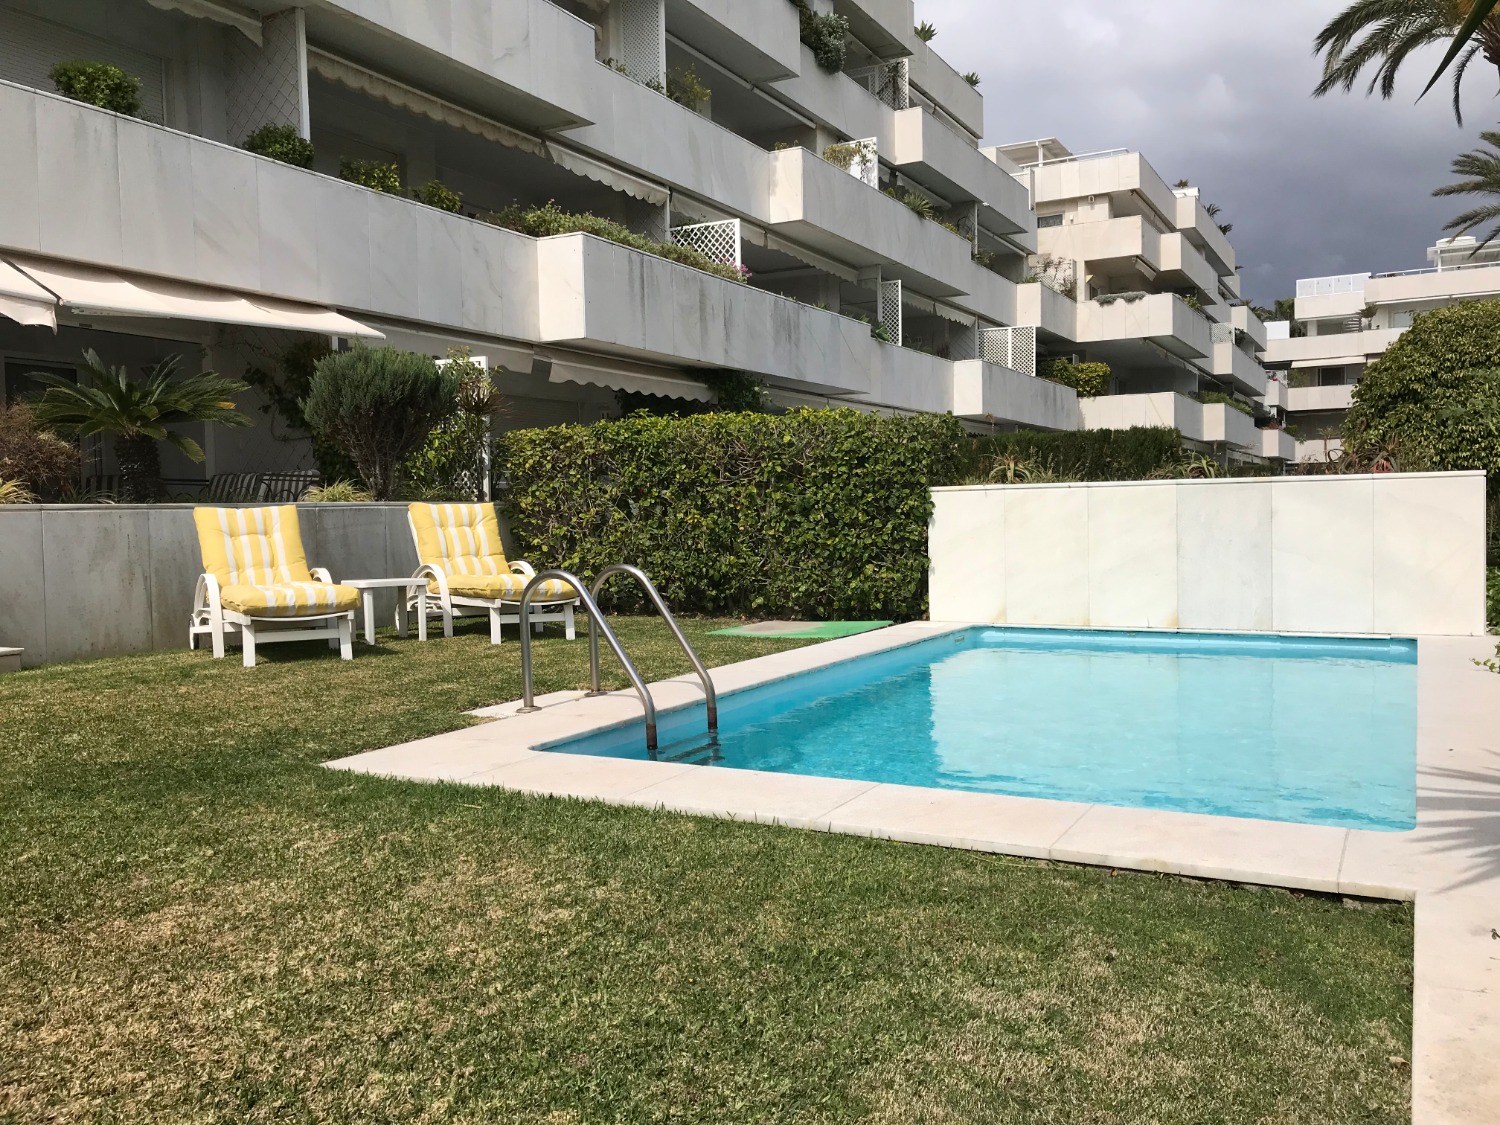 洛斯格拉纳多斯-巴努斯港, 3 间卧室, 私人游泳池